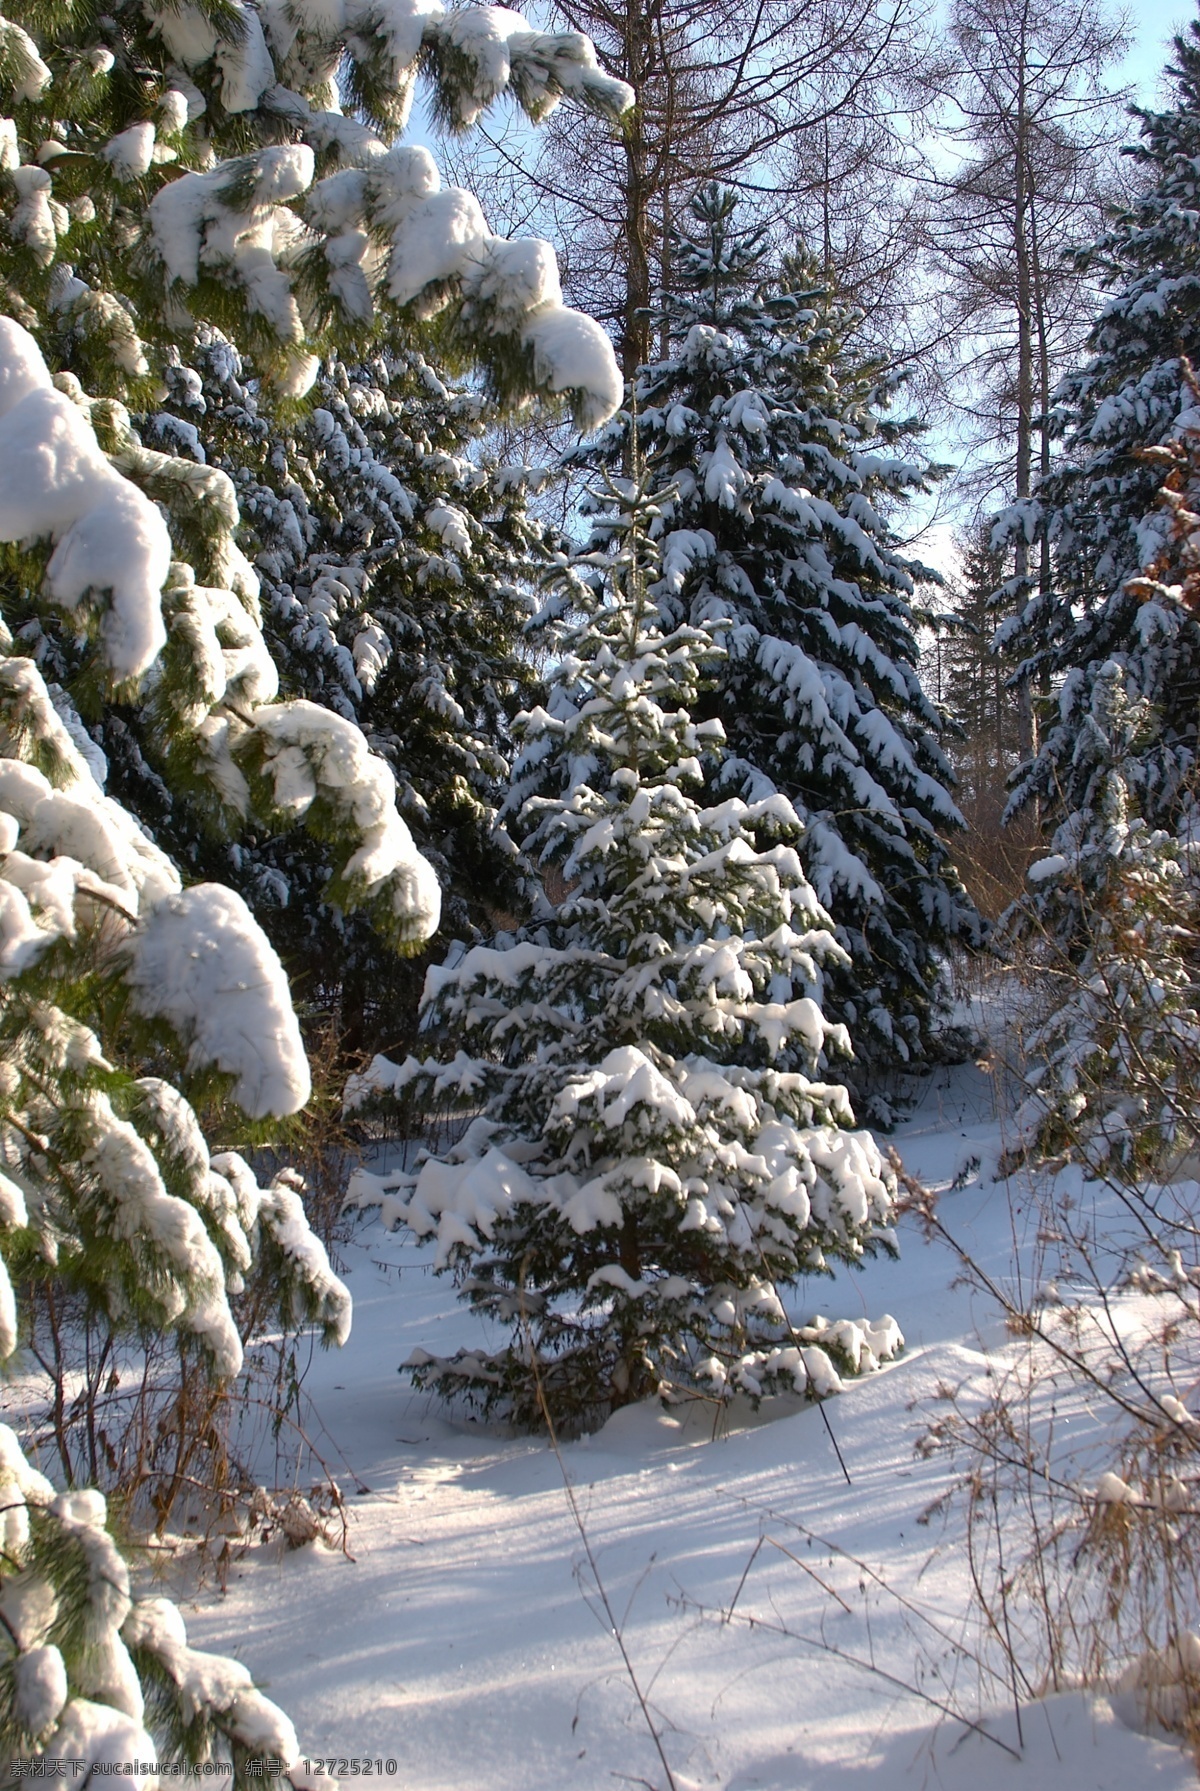 冬天 树林 雪景 冬天雪景 冬季 美丽风景 美丽雪景 树木 森林 白雪 积雪 风景摄影 雪景图片 风景图片